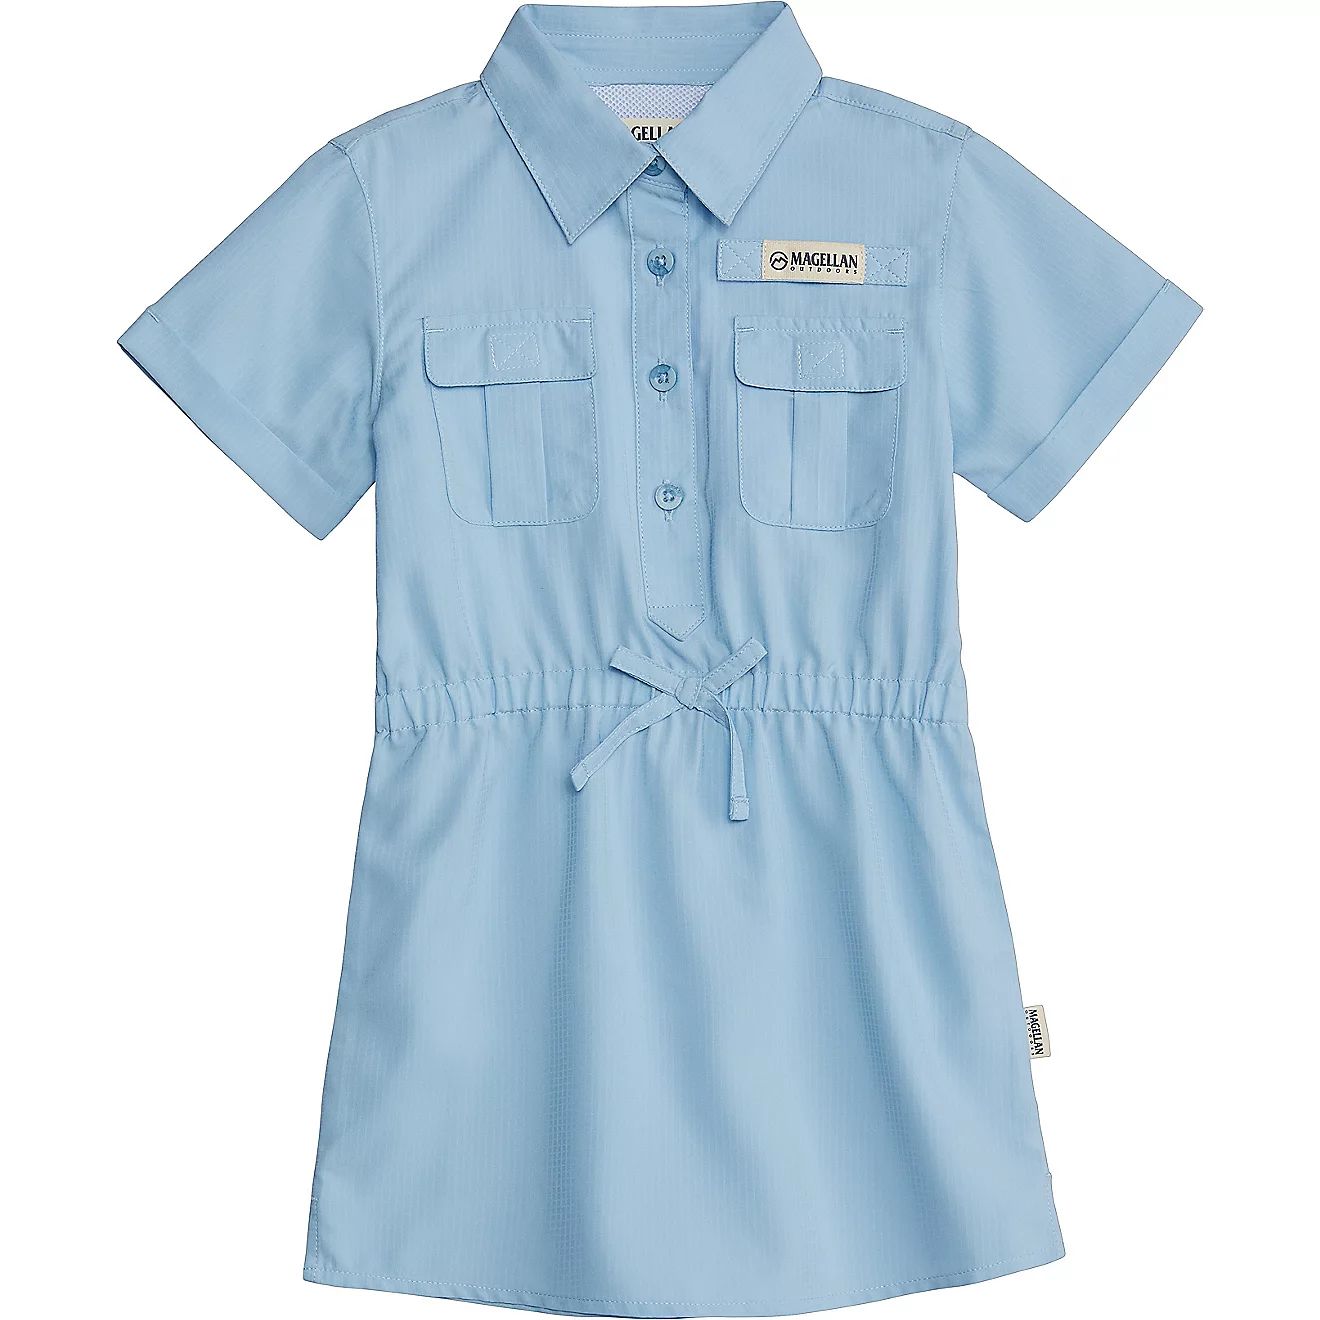 Magellan Outdoors Toddler Girls' Southern Summer Fishing Shirt Dress | Academy | Academy Sports + Outdoors